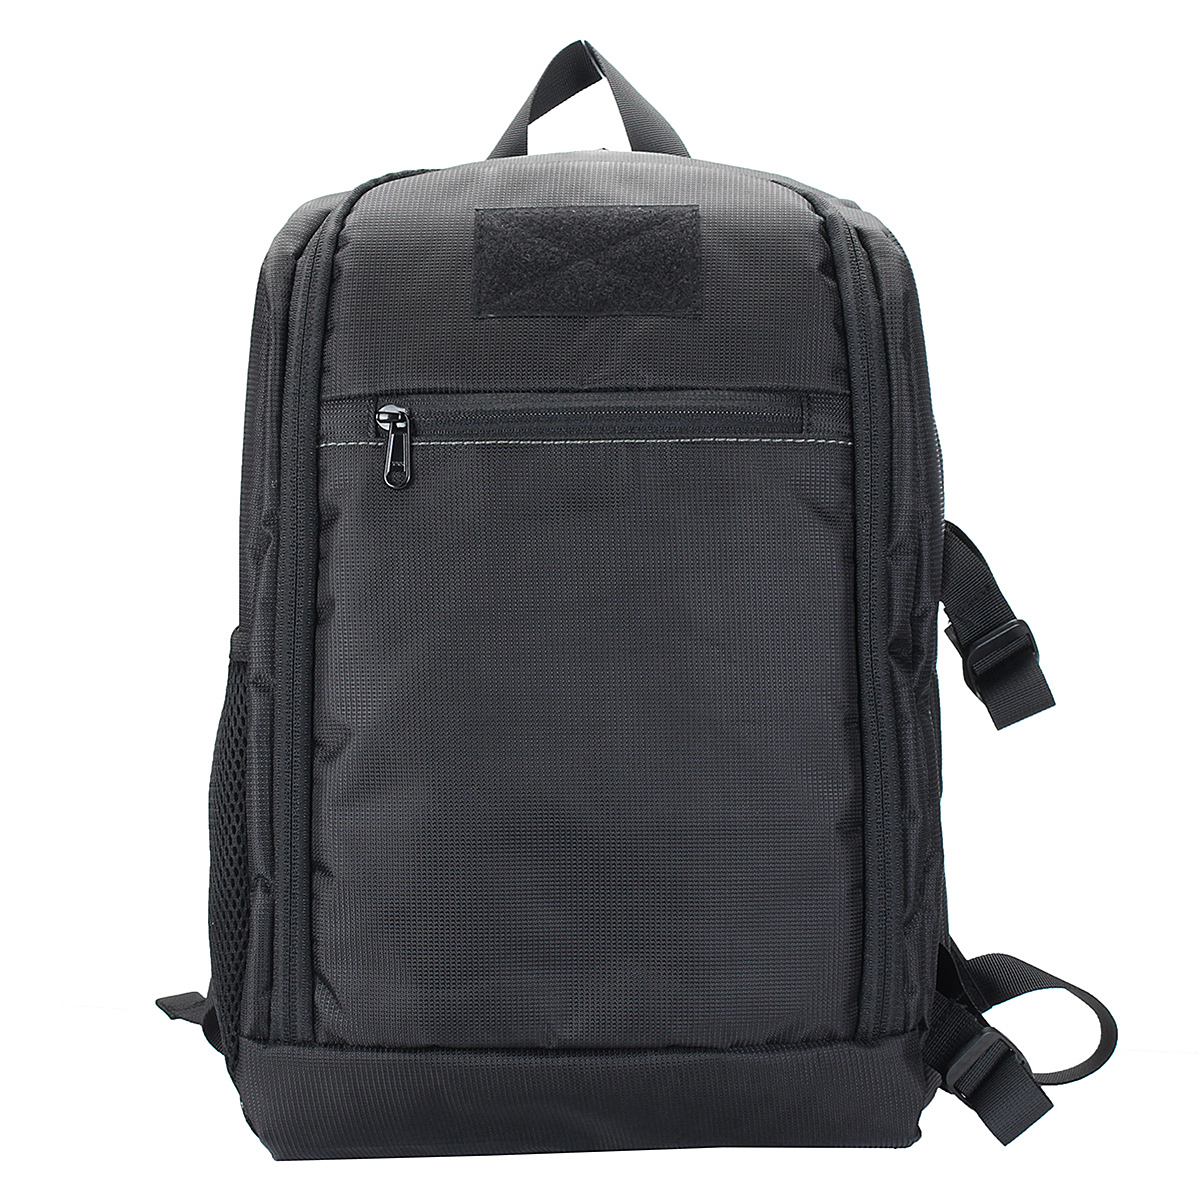 Waterproof-Backpack-Shoulder-Bag-Laptop-Case-For-DSLR-Camera-Lens-Accessories-1401643-2